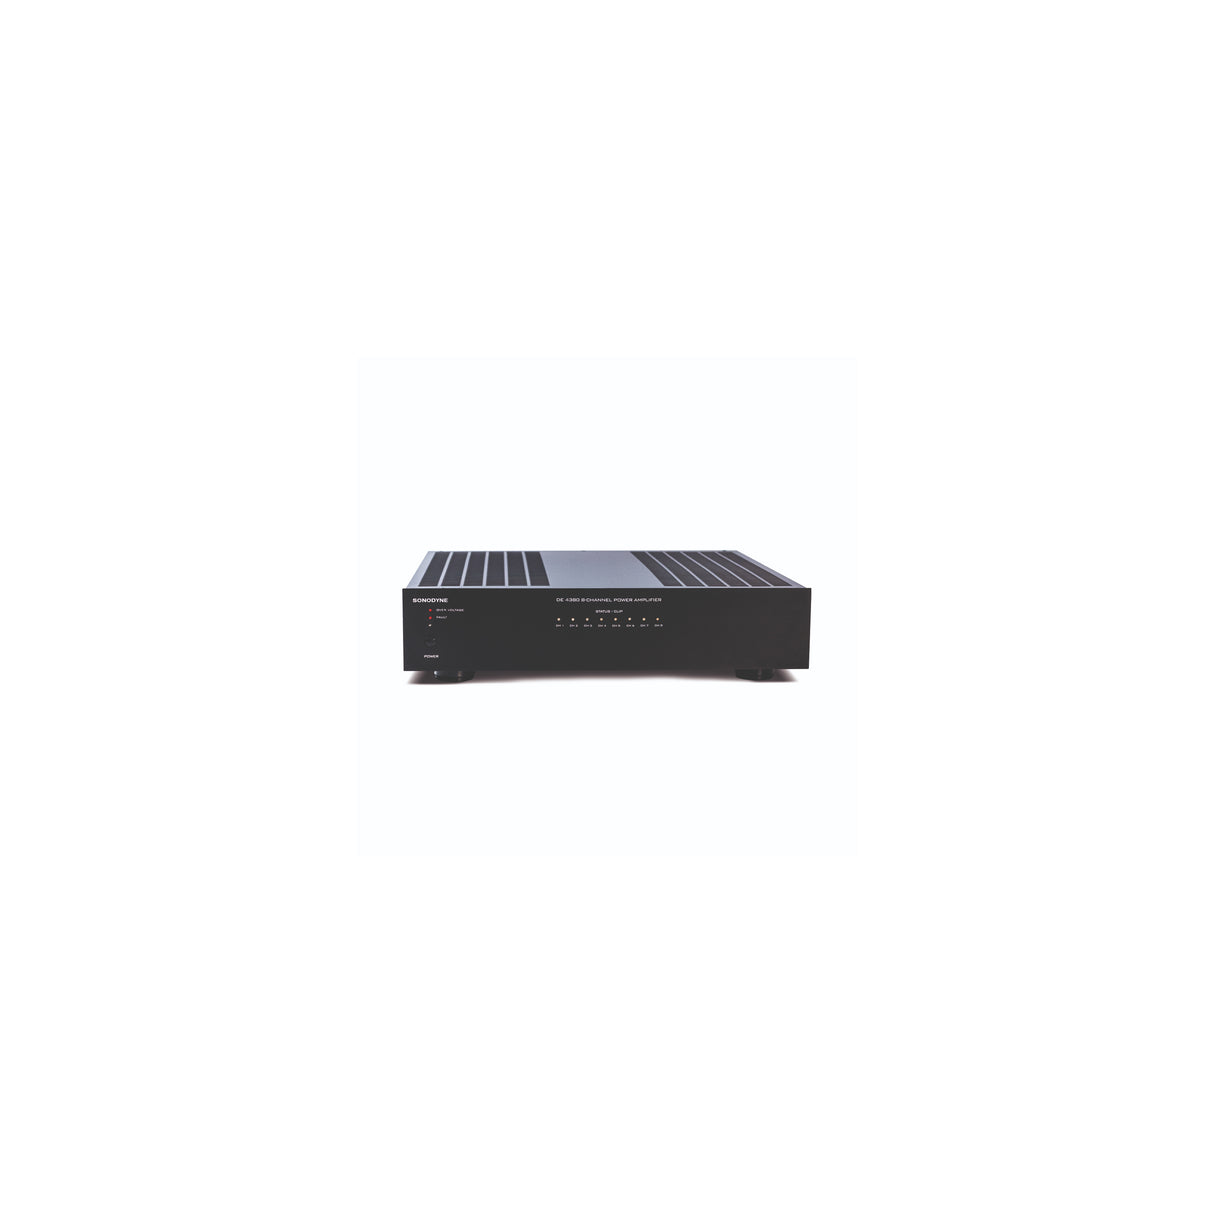 Sonodyne DE 4380 - 8 Channel Power Amplifier (100 Watts Per Channel)